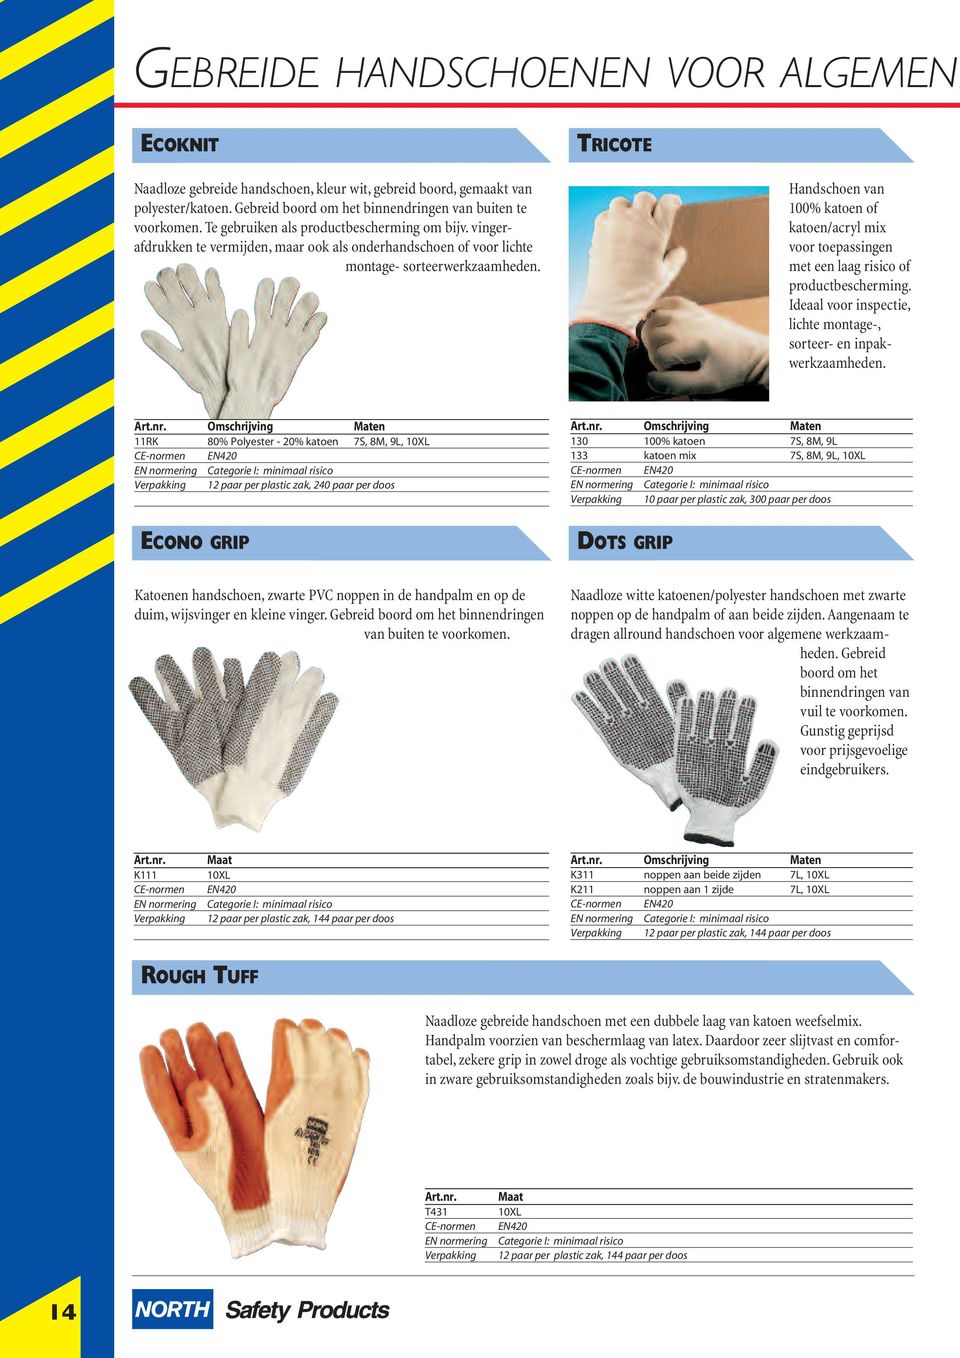 Handschoen van 100% katoen of katoen/acryl mix voor toepassingen met een laag risico of productbescherming. Ideaal voor inspectie, lichte montage-, sorteer- en inpakwerkzaamheden. Art.nr.